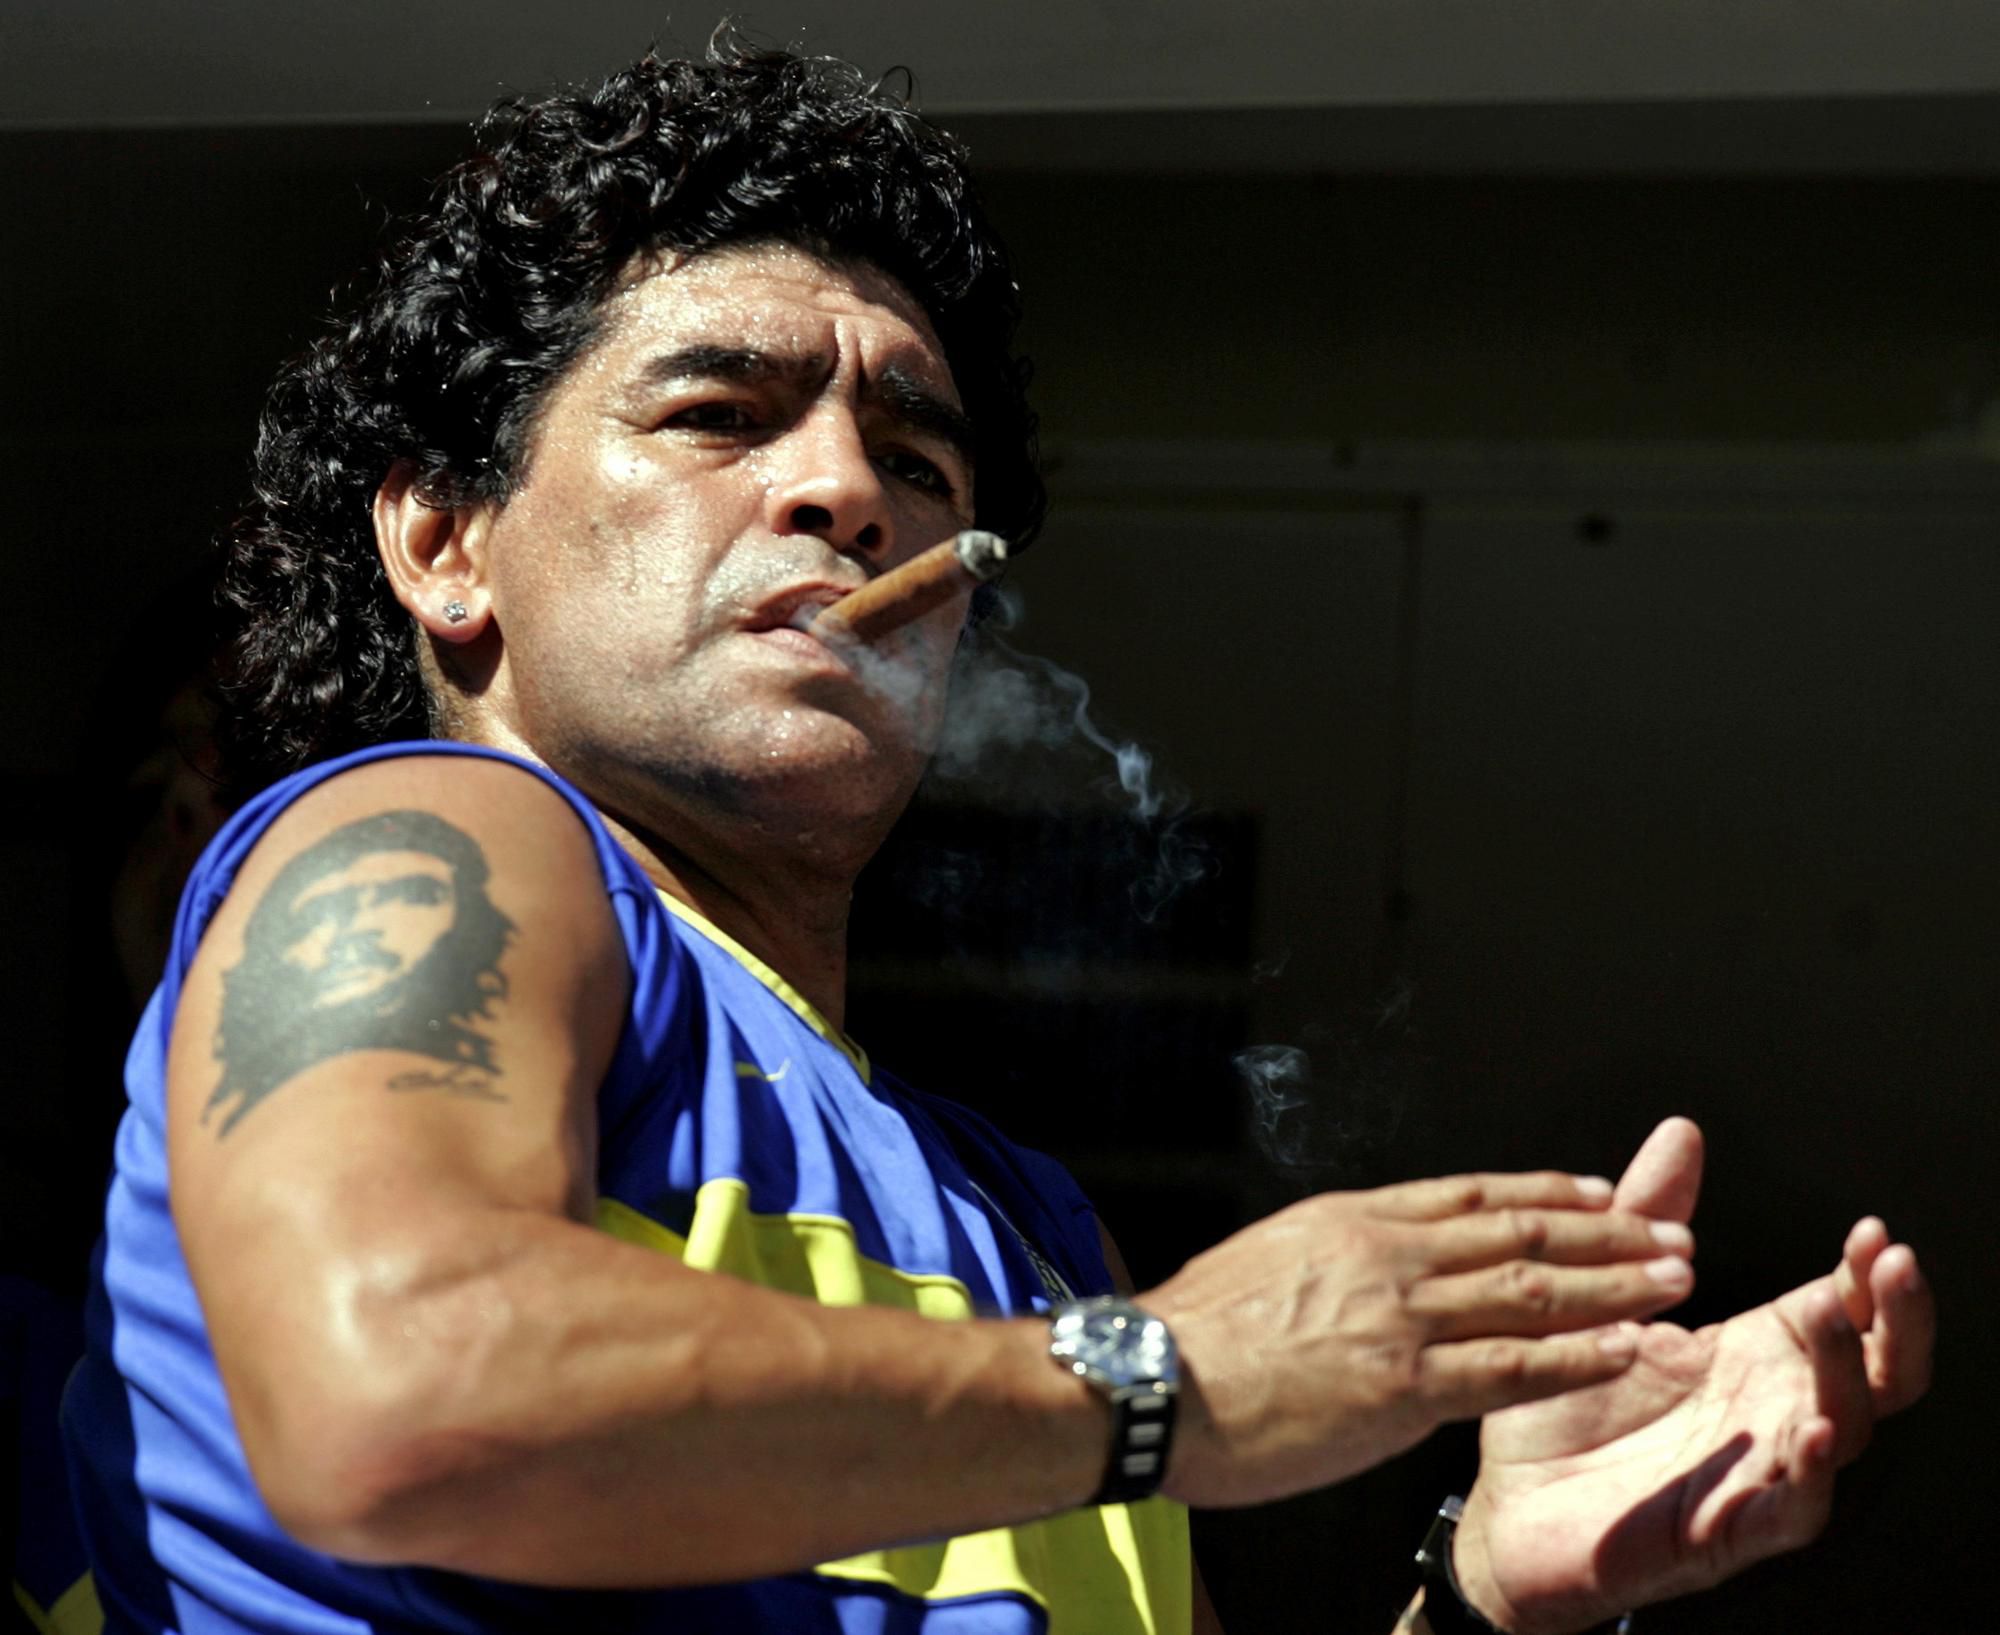 Argentínsky futbalista Diego Maradona s cigarou.